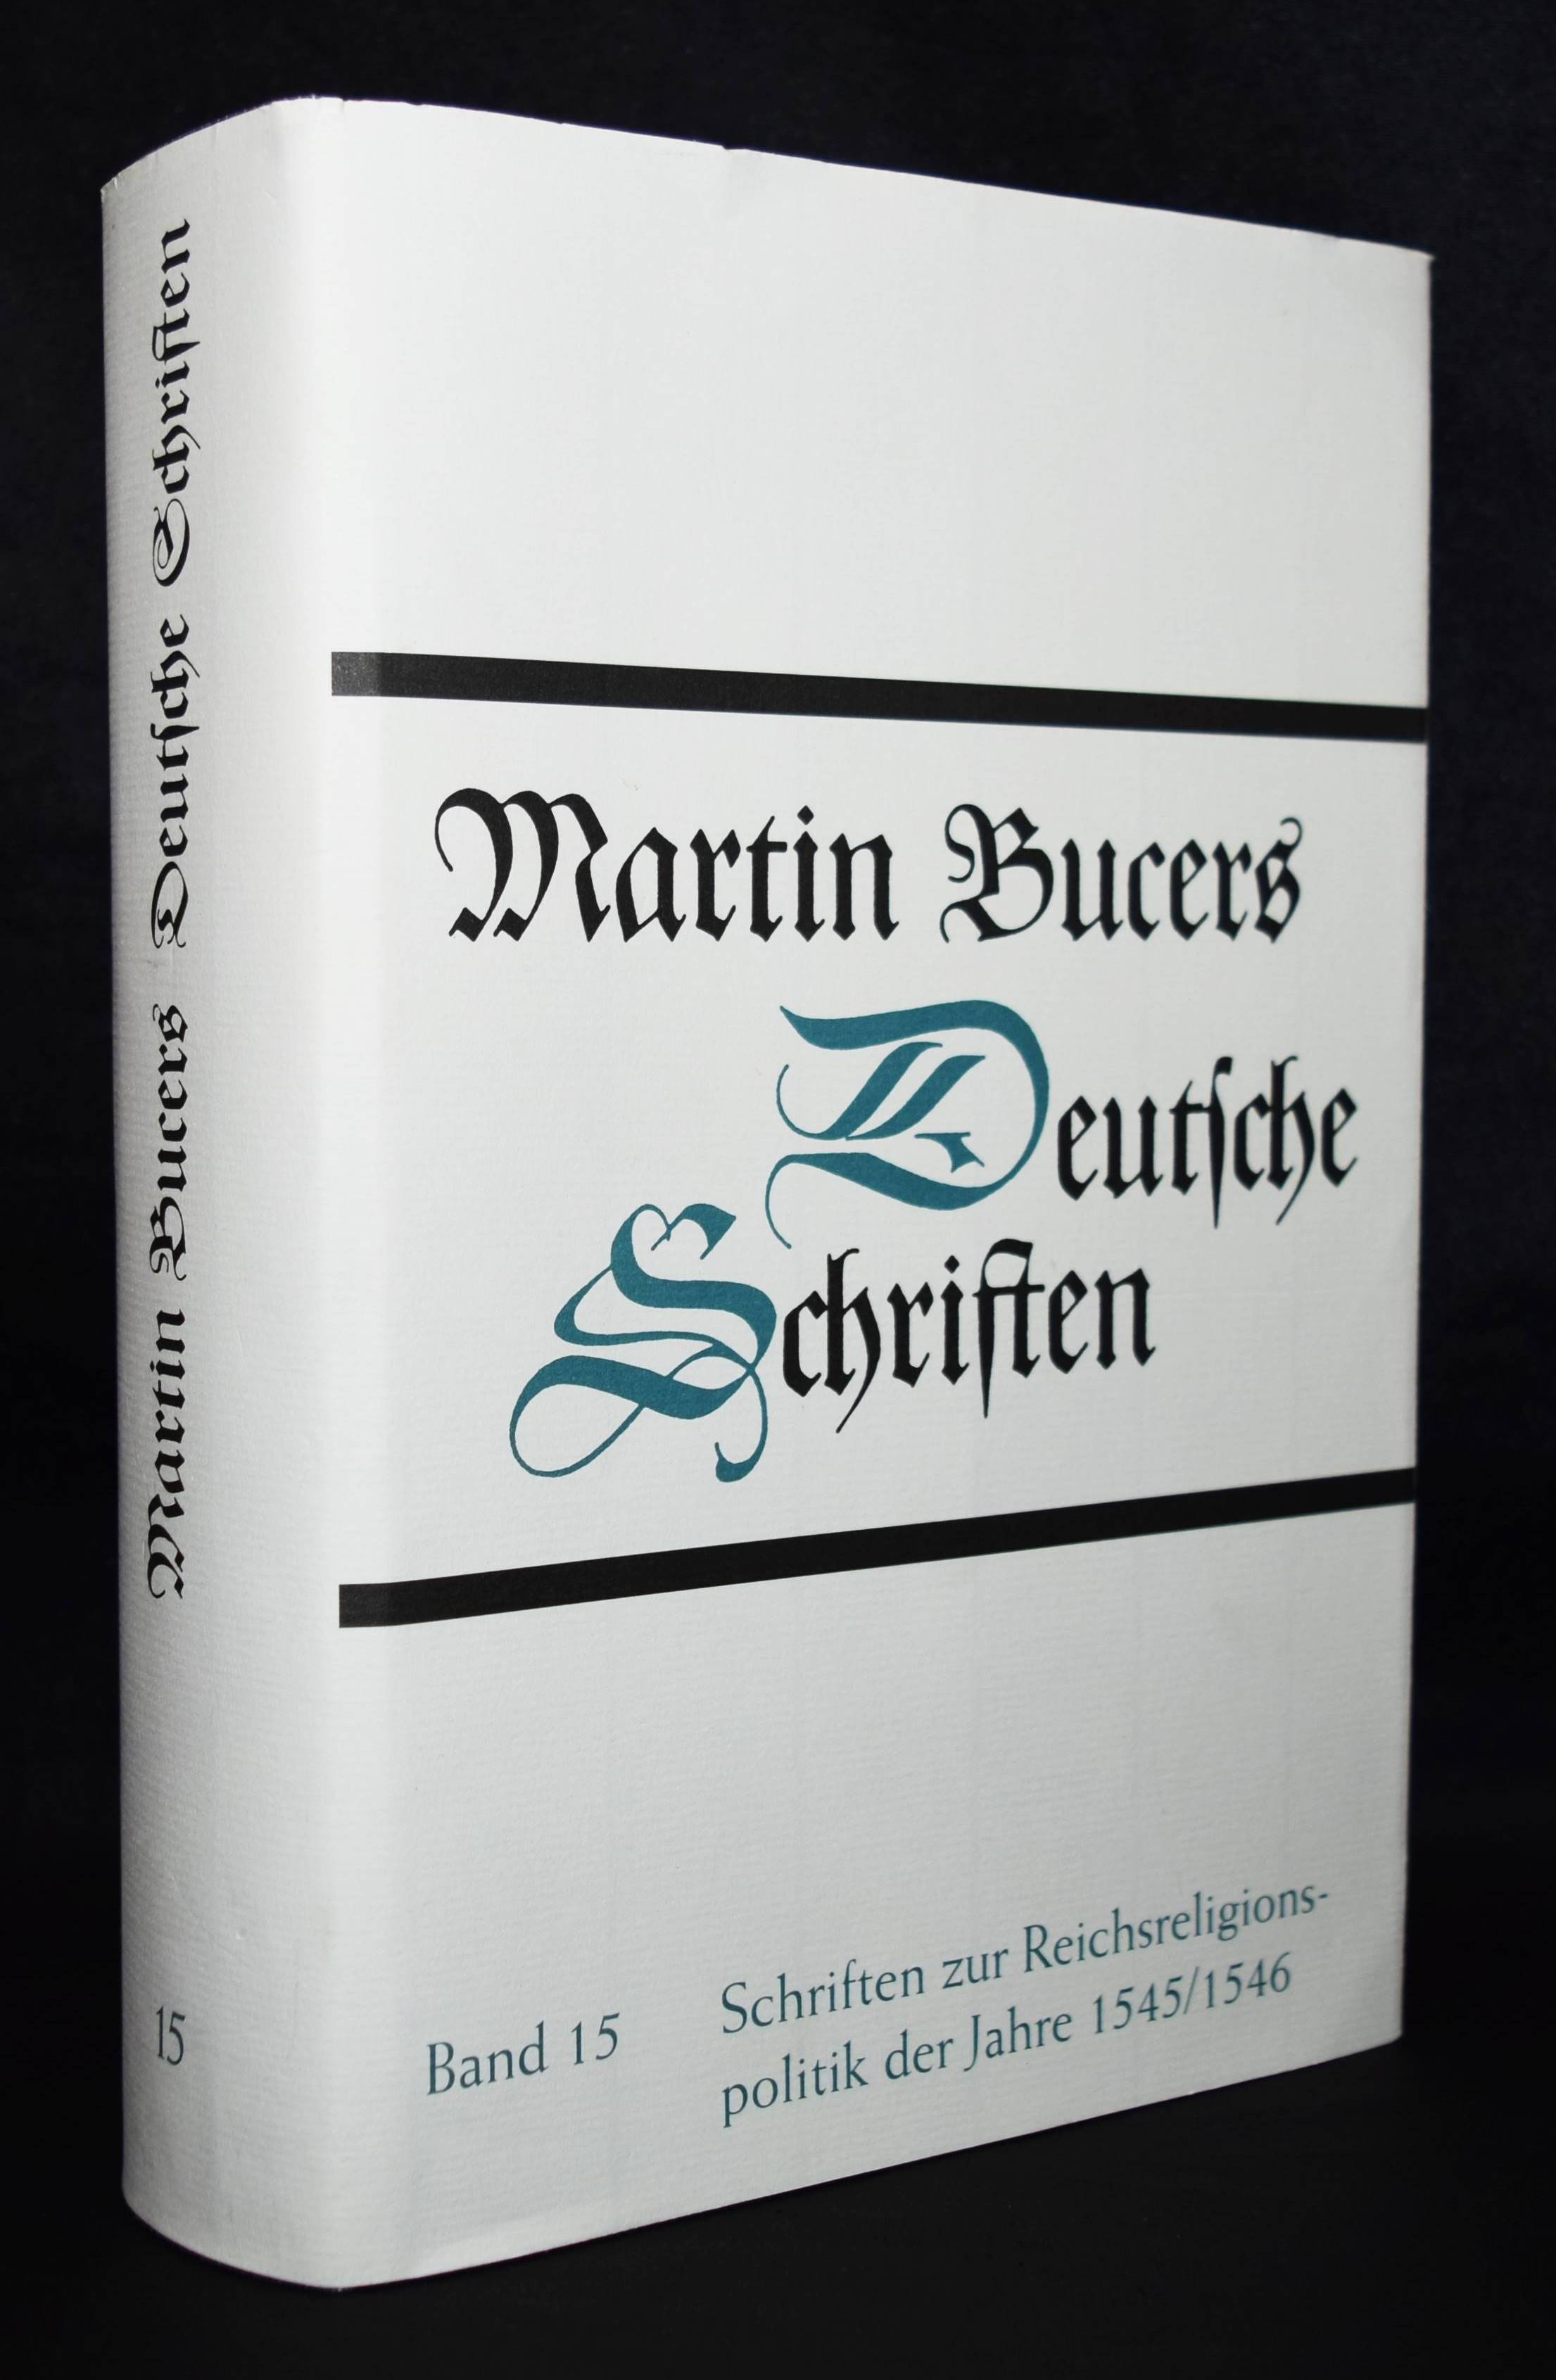 Martin Bucers deutsche Schriften. Band 15. Schriften zur Reichsreligionspolitik der Jahre 1545/1546. - Bucer, Martin.